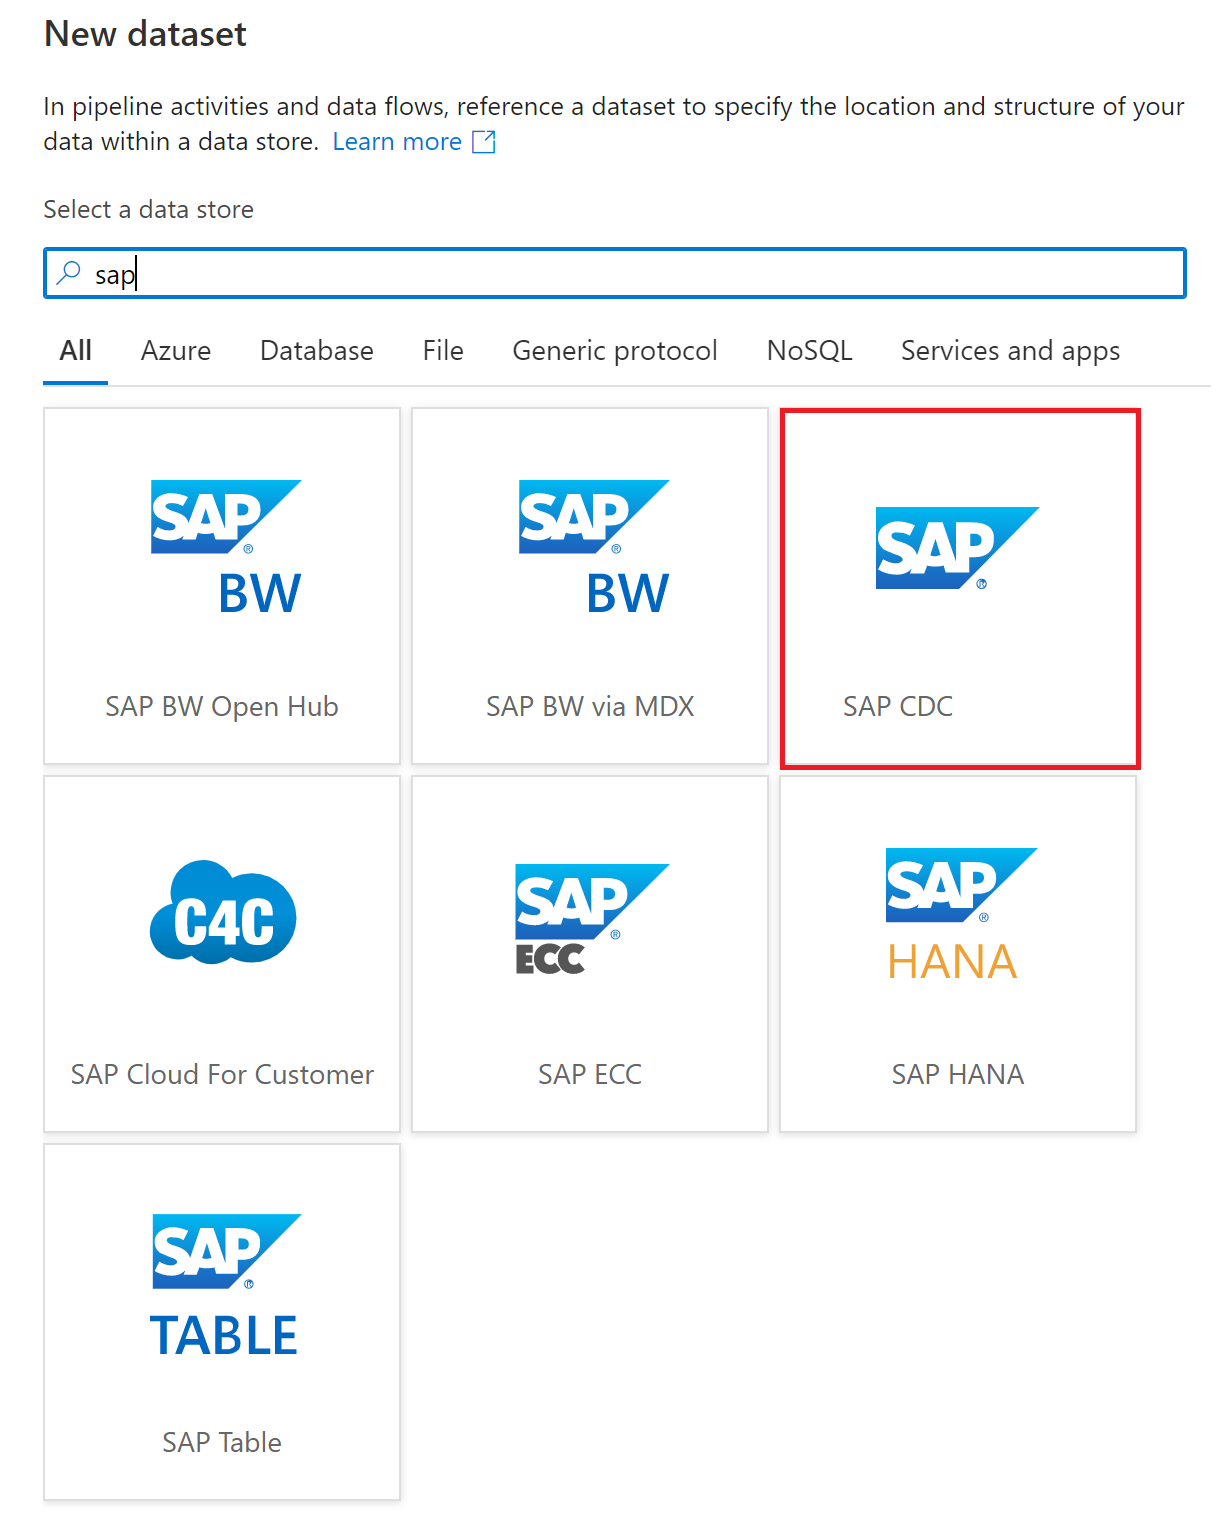 Yeni veri kümesi iletişim kutusundaki SAP CDC veri kümesi türünün ekran görüntüsü.